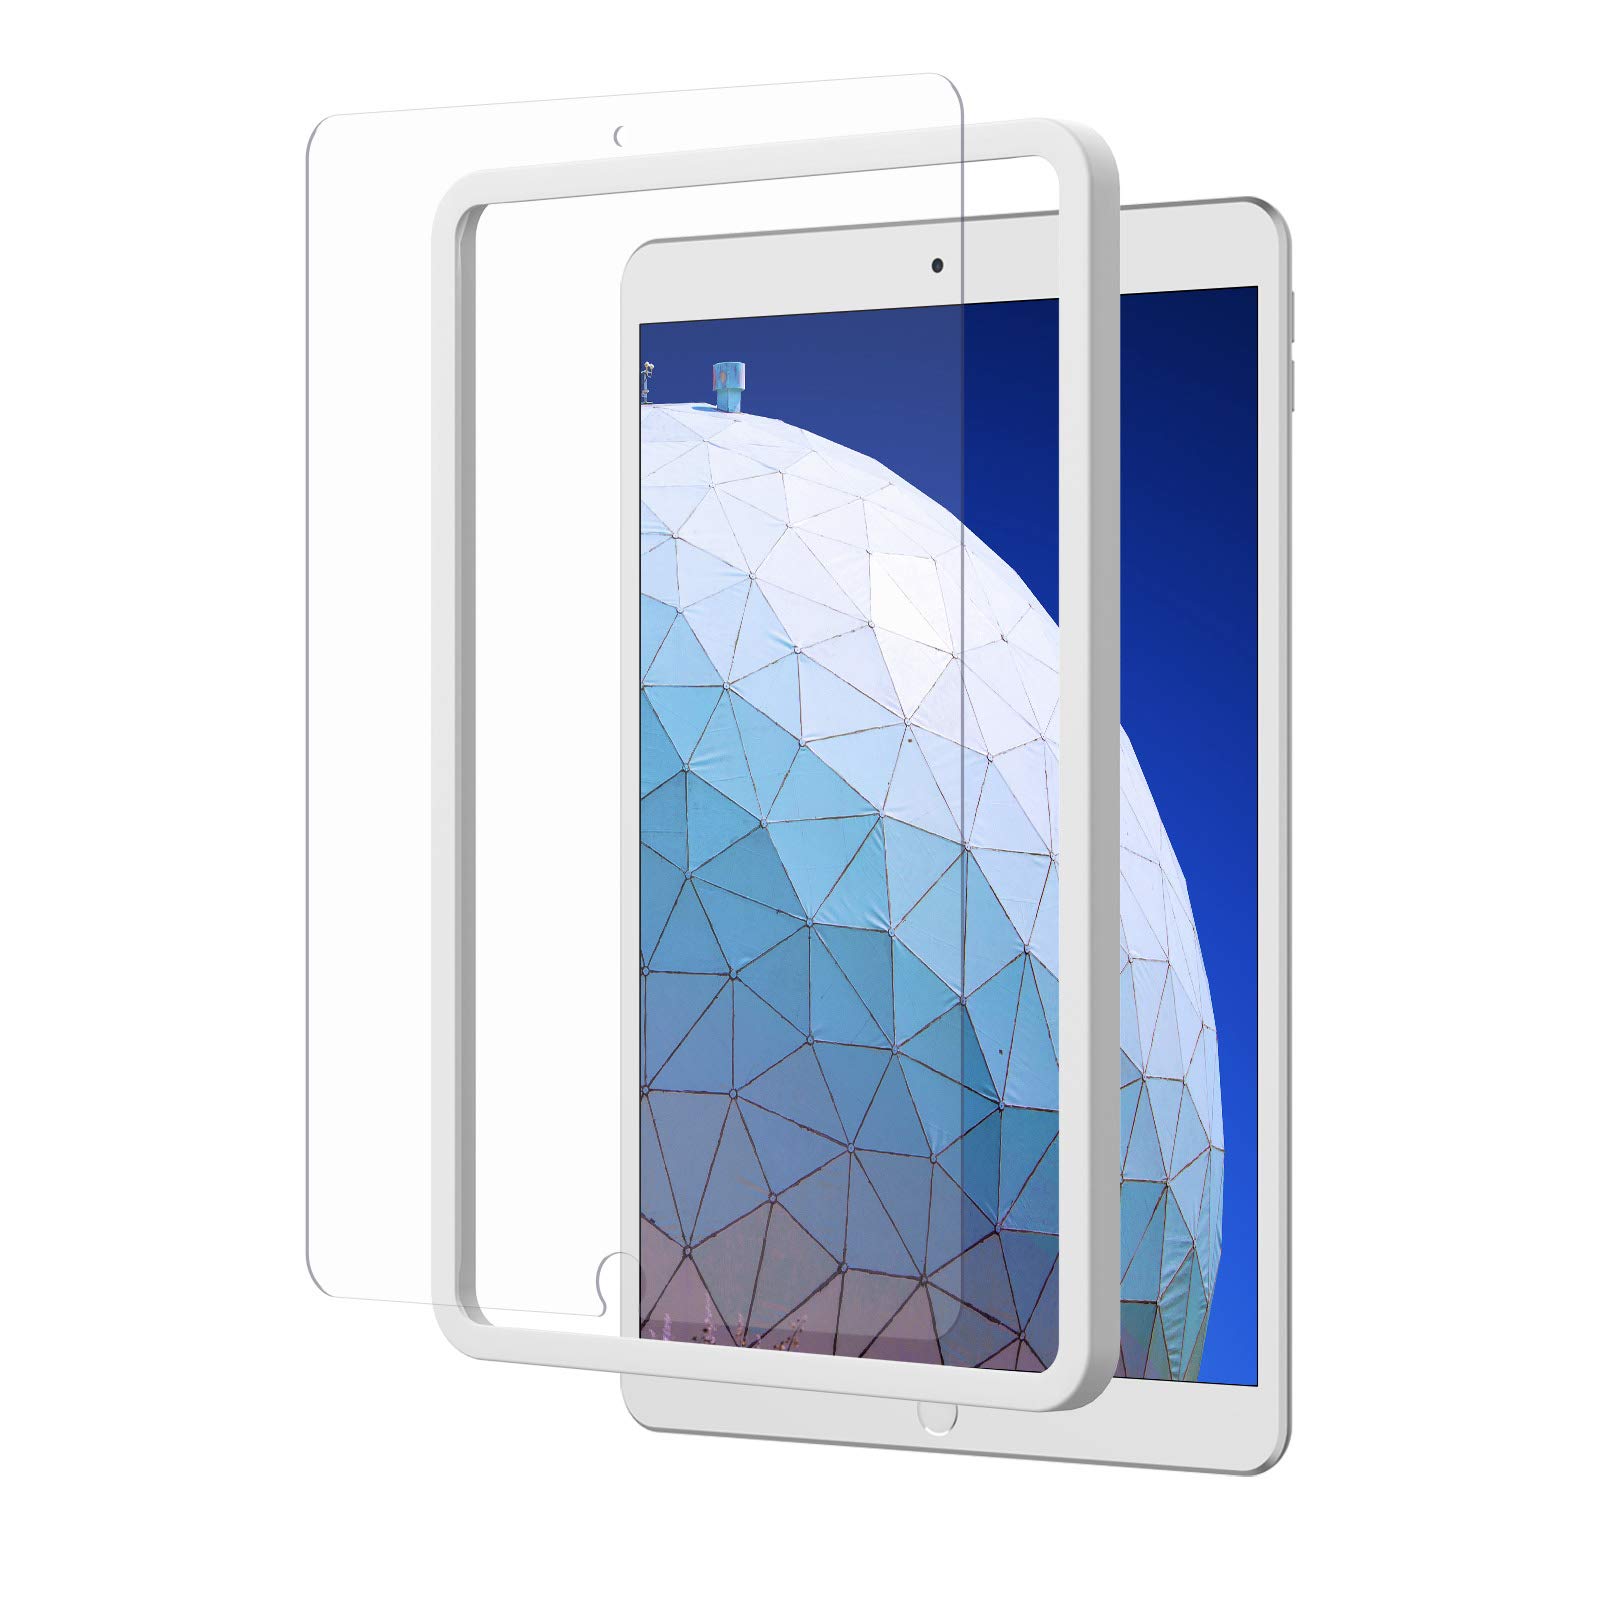 NIMASO ガラスフィルム iPad Air3 2019 / iPad Pro 10.5 用 強化 ガラス 液晶 保護 フィルム ガイド枠..